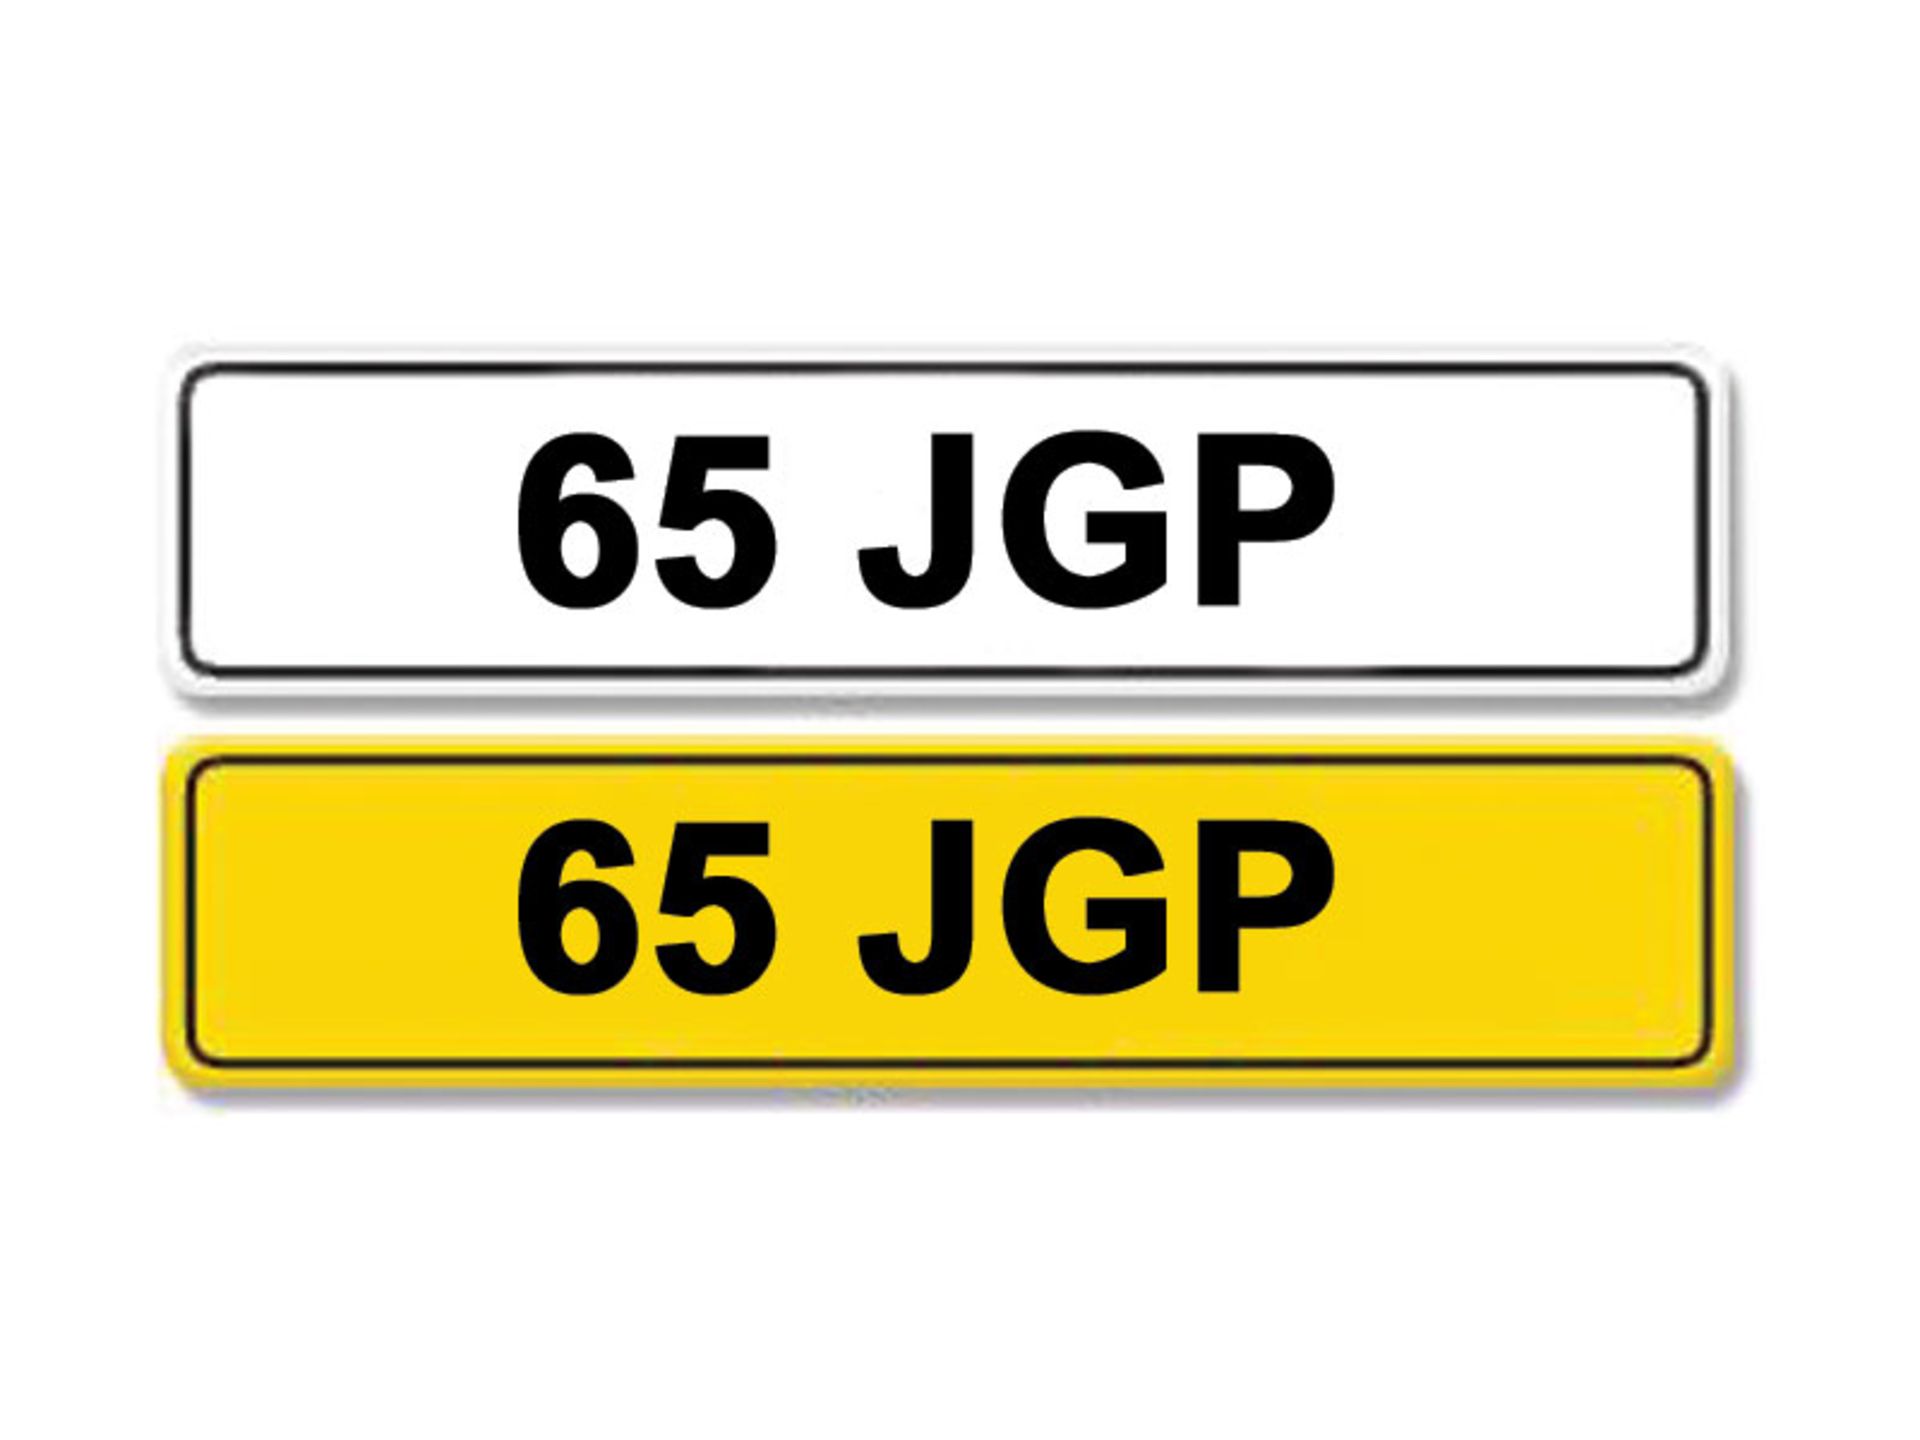 Registration Number 65 JGP